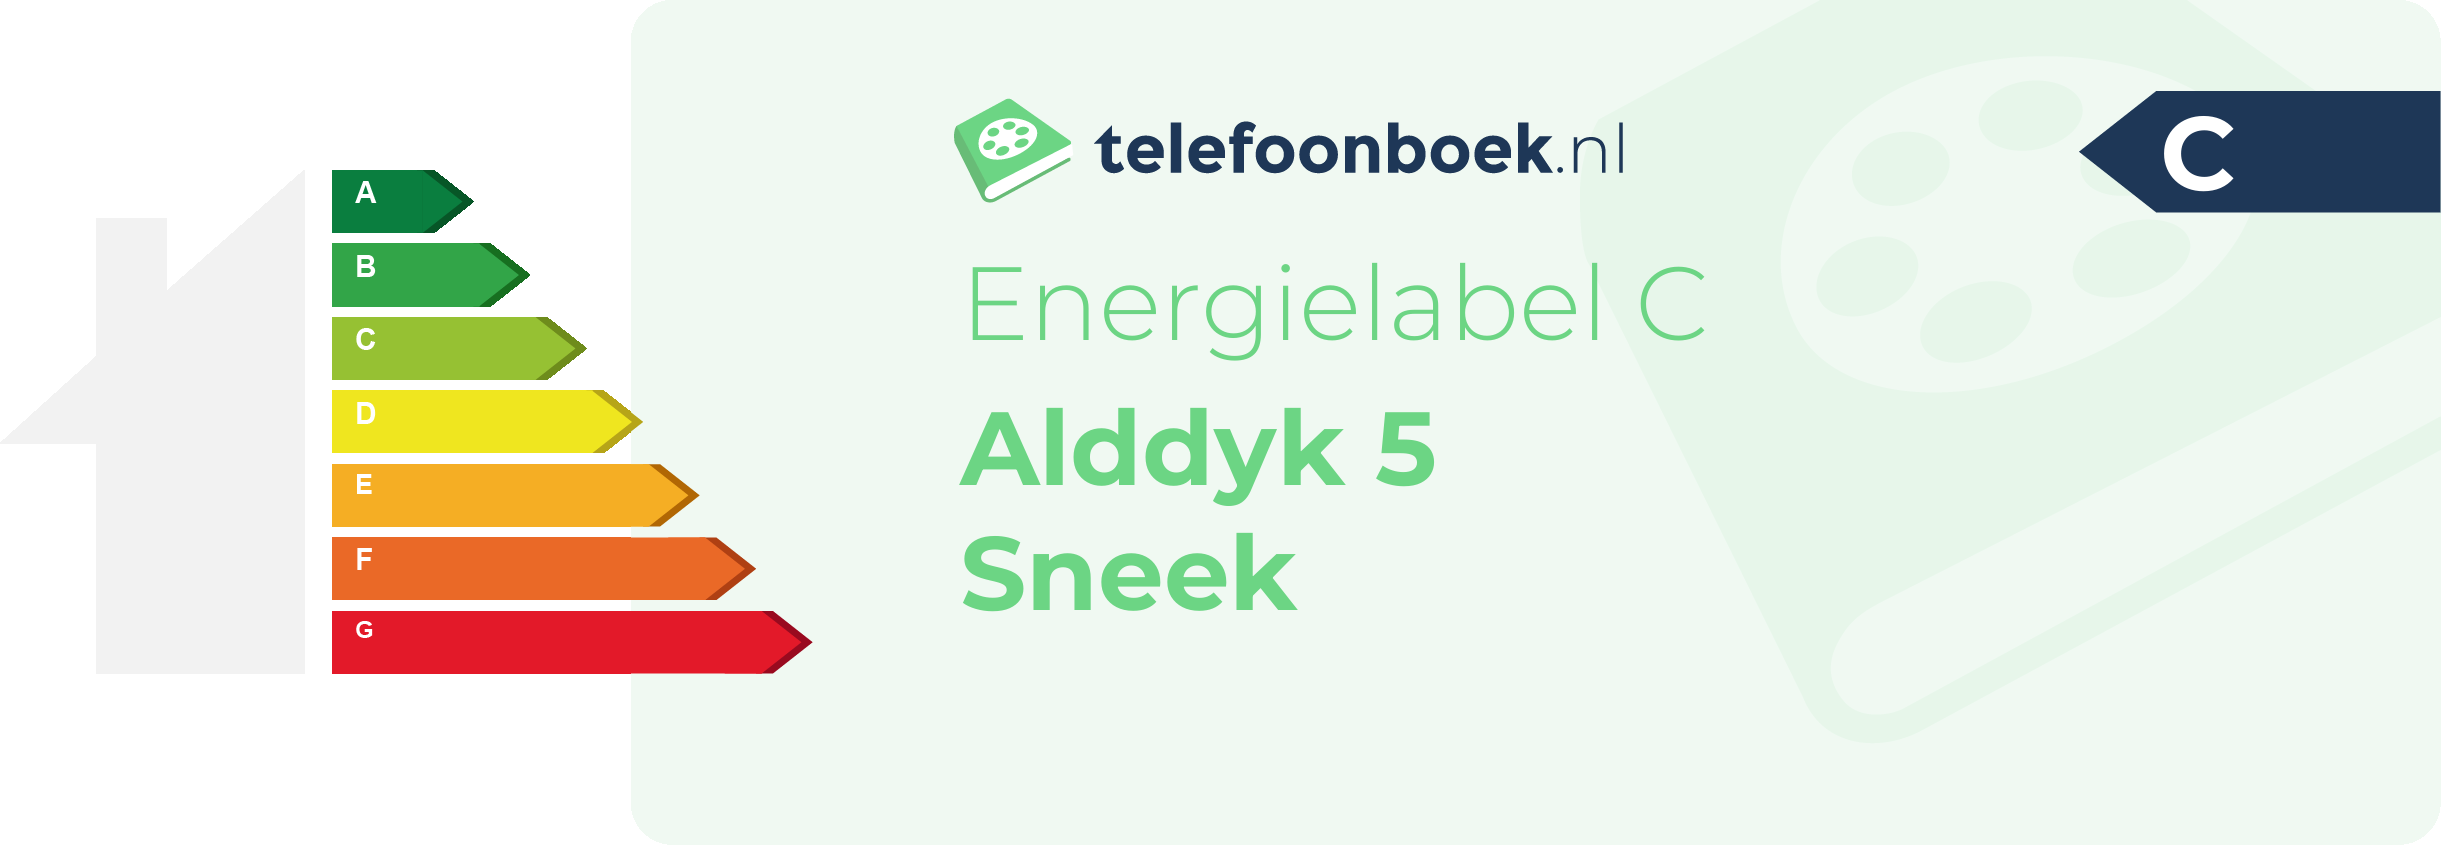 Energielabel Alddyk 5 Sneek